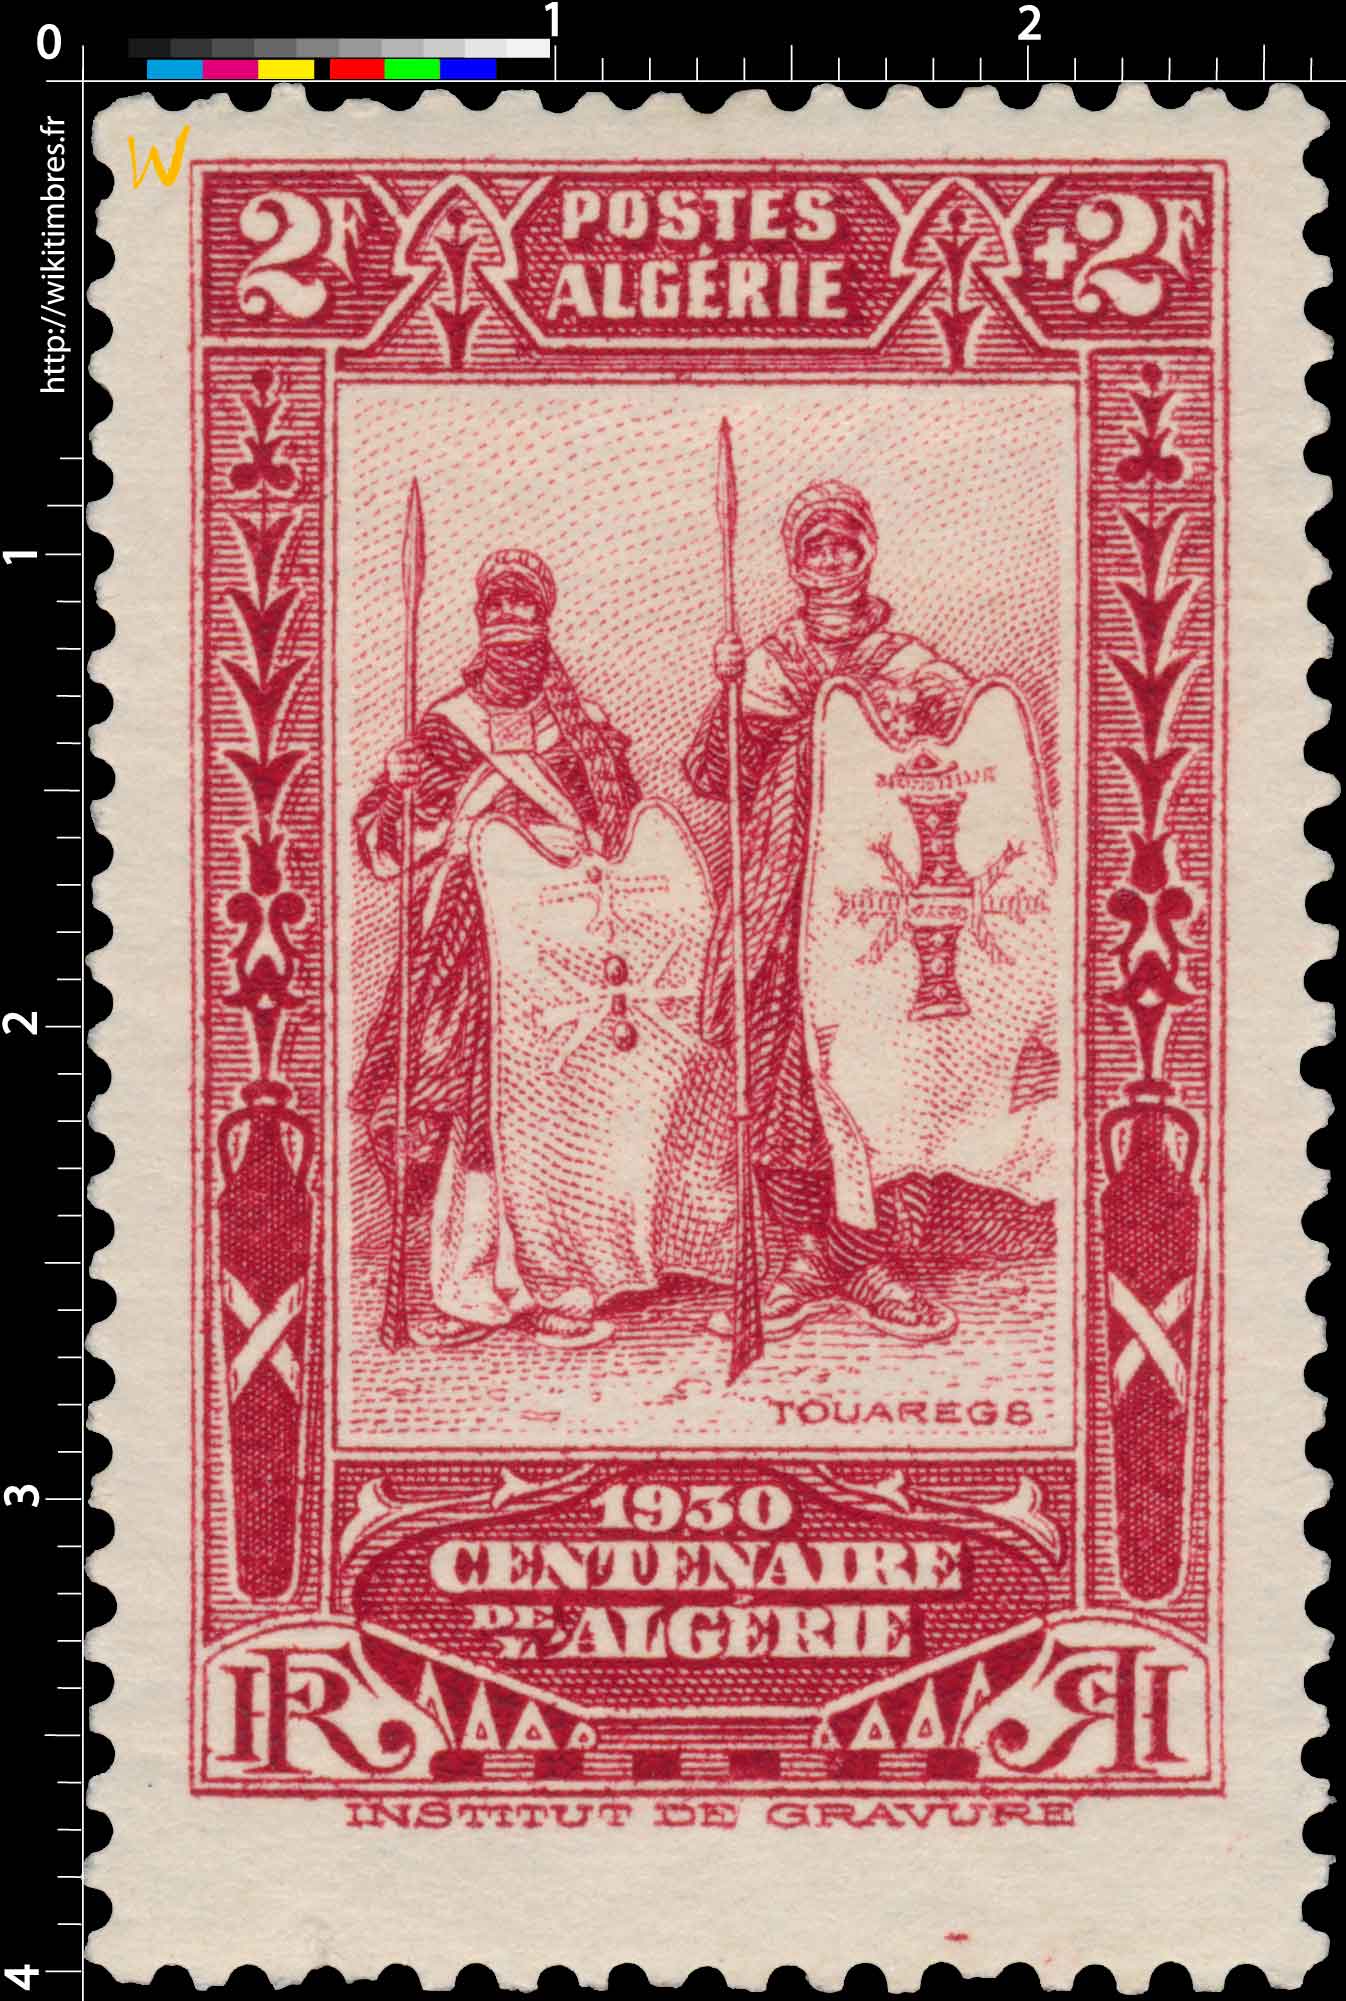 Algérie - Touaregs - Centenaire de l'Algérie 1930